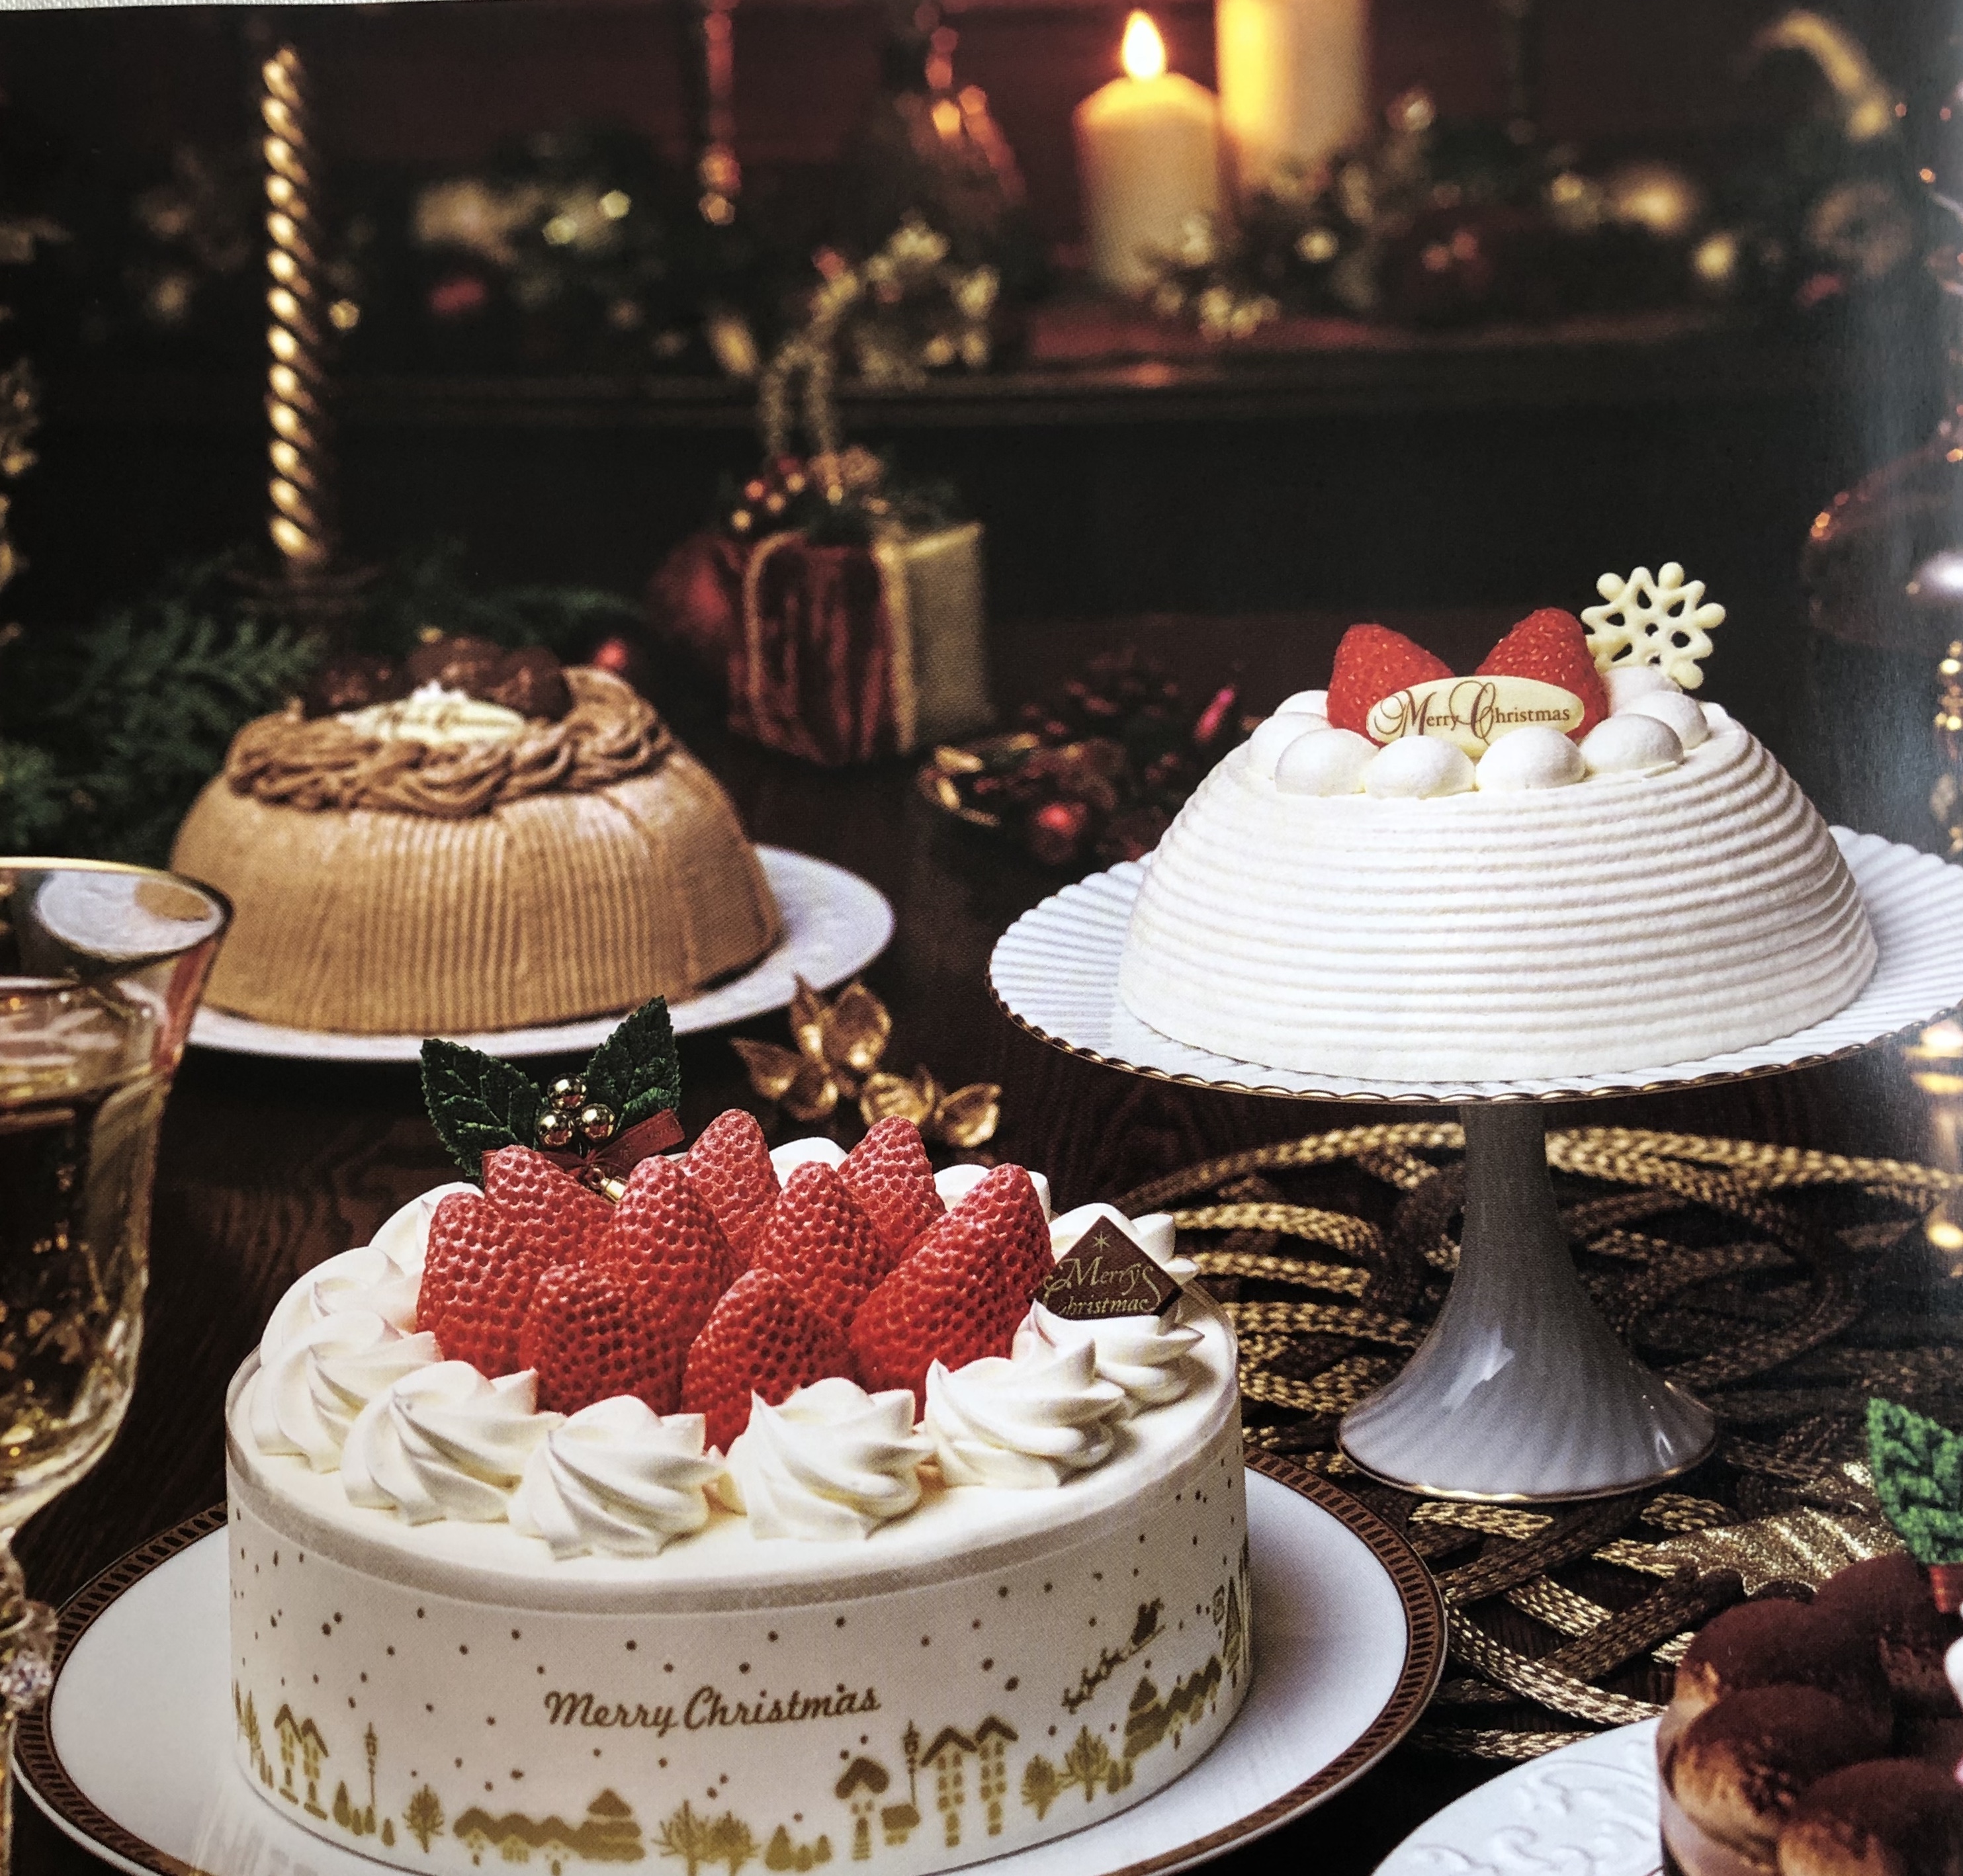 セブンイレブンのクリスマスケーキ19予約はキンプリの特典も 白い旅人ブログ